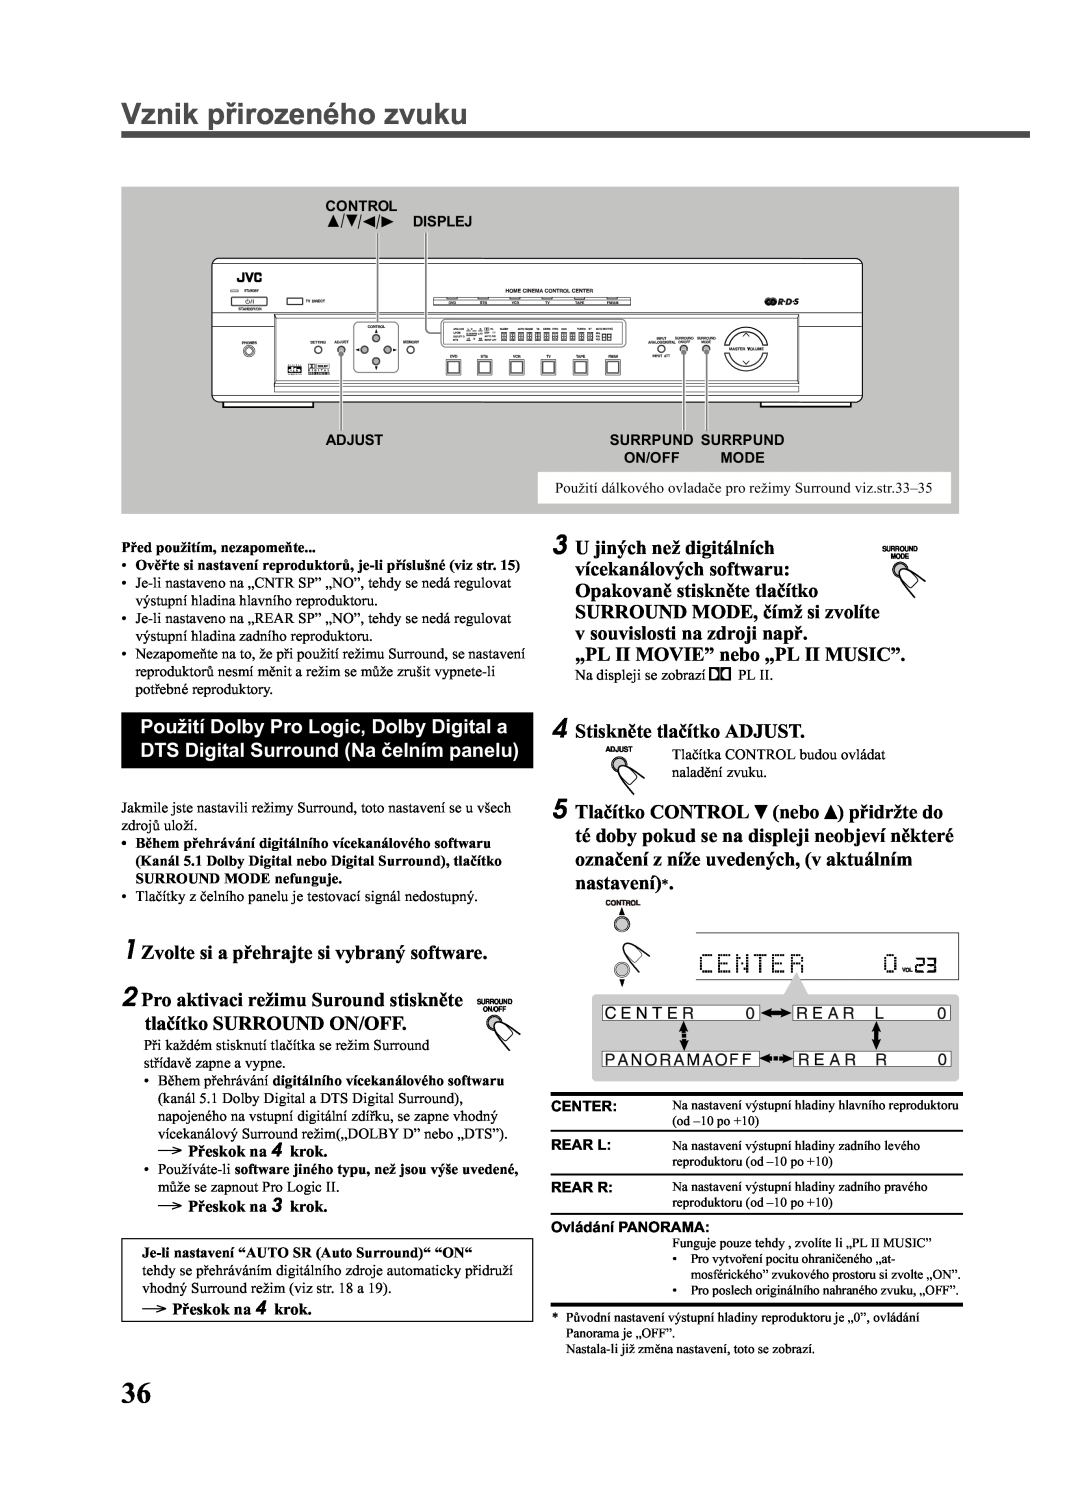 JVC RX-E111RSL, RX-E112RSL manual Vznik pøirozeného zvuku, U jiných než digitálních 